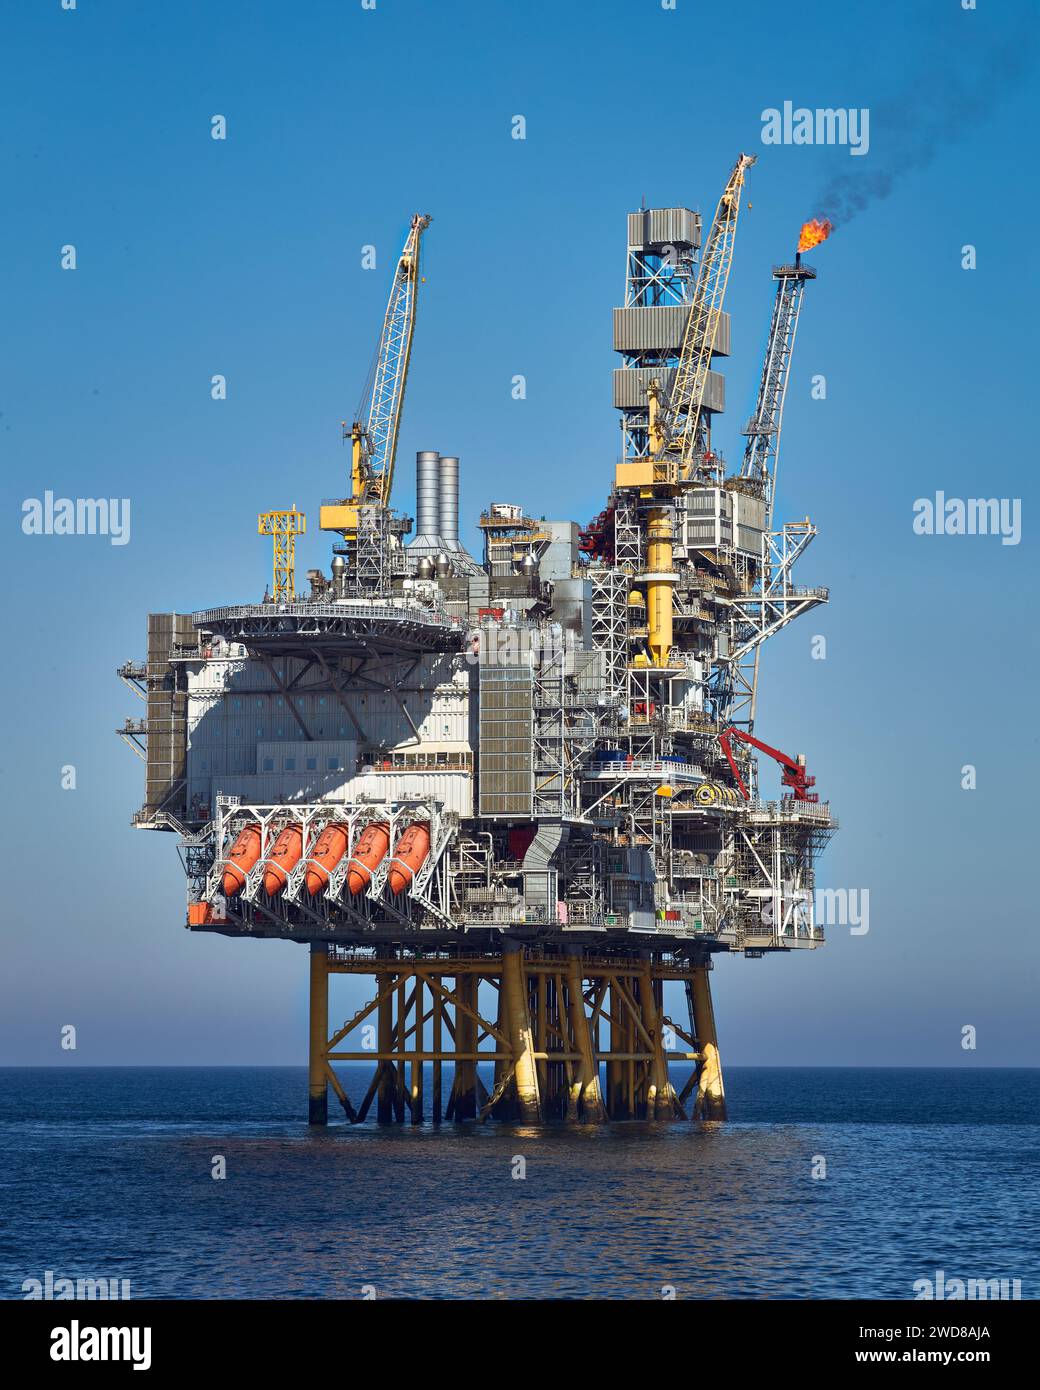 Plate-forme de jackup pétrolière et gazière offshore dans l'océan pendant la journée claire et lumineuse, avec le ciel bleu et l'eau calme. Banque D'Images